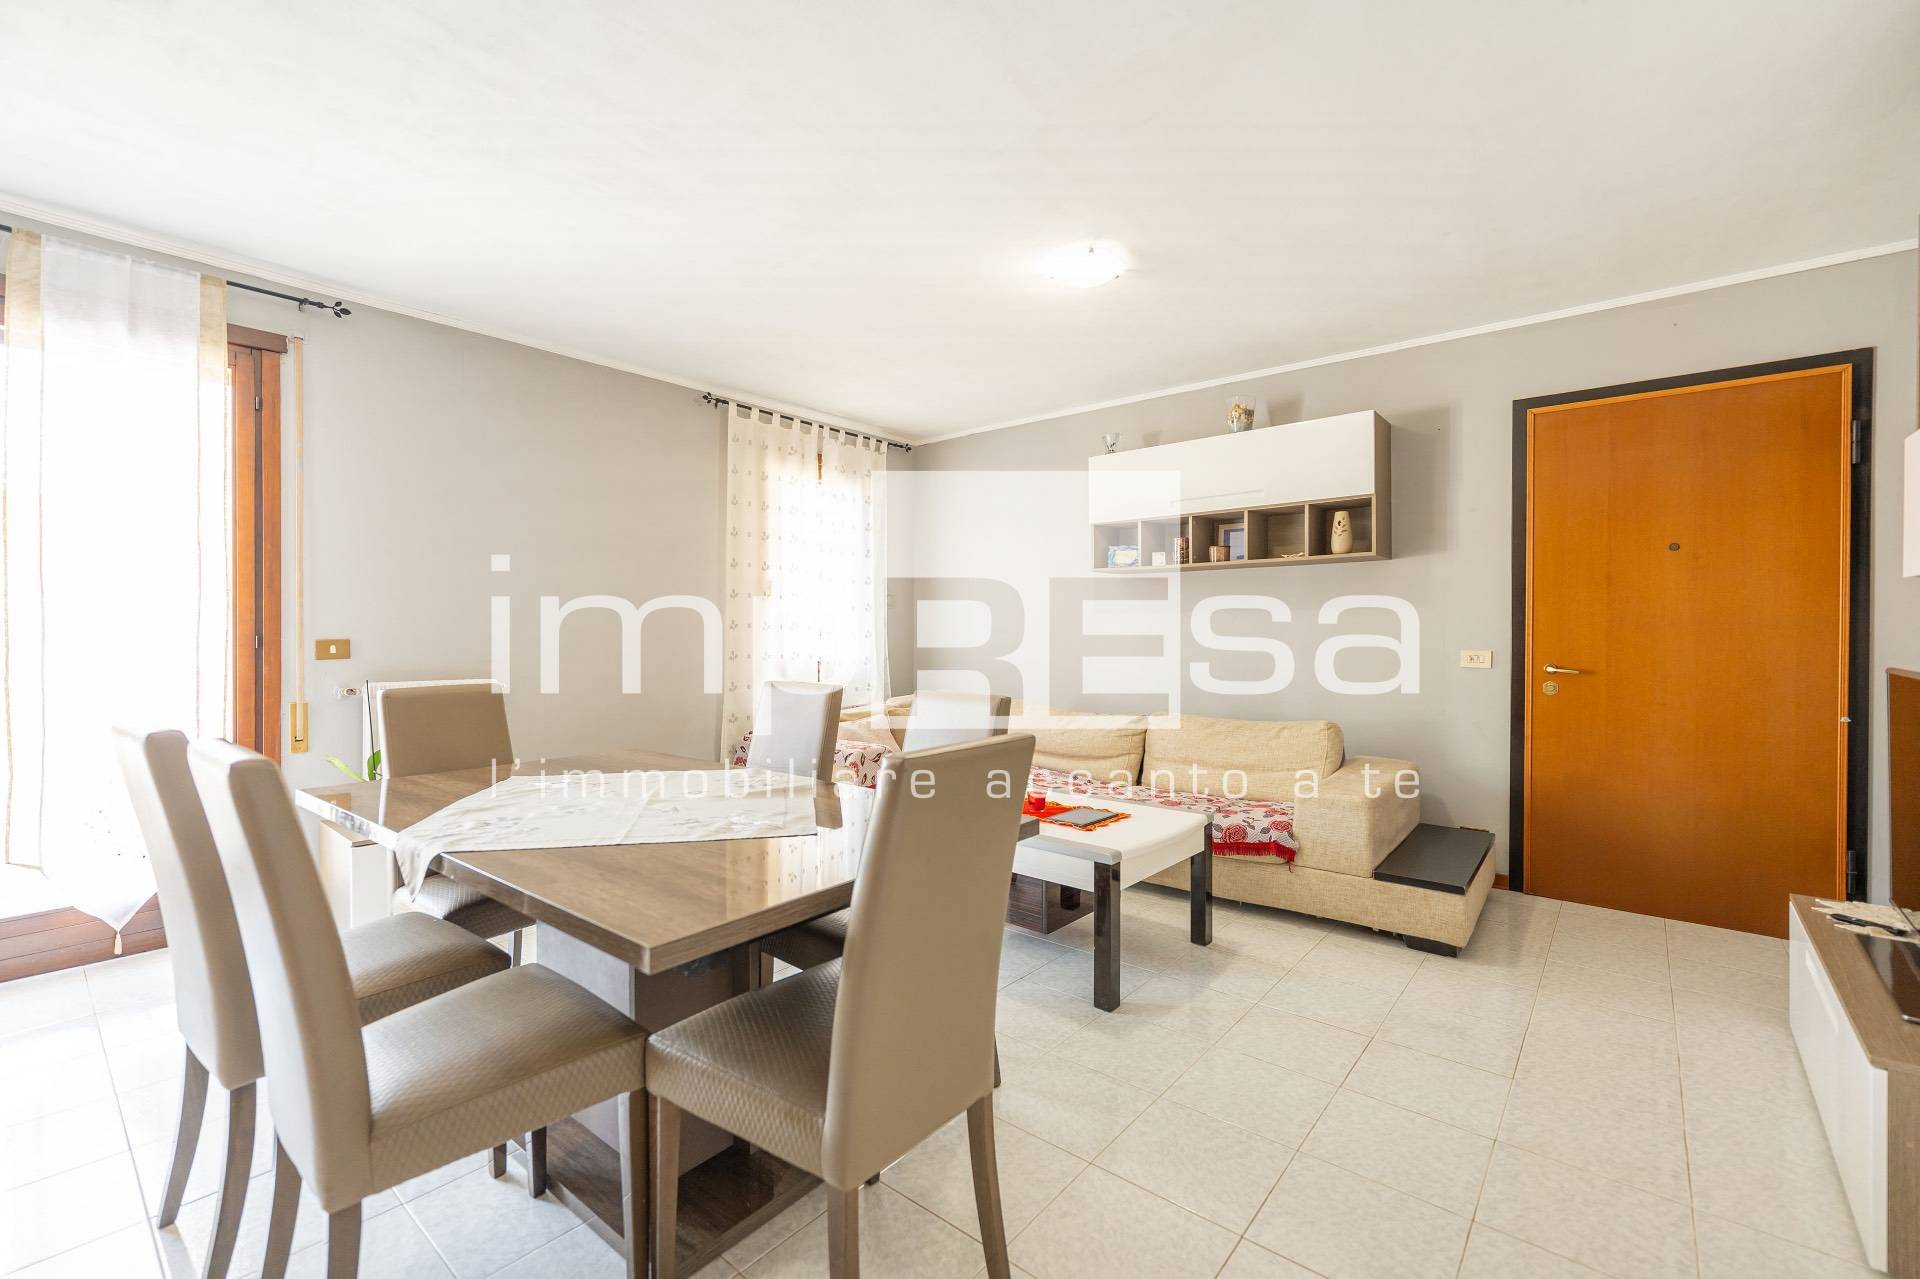 Appartamento in vendita a Pasiano di Pordenone, 3 locali, prezzo € 185.000 | PortaleAgenzieImmobiliari.it